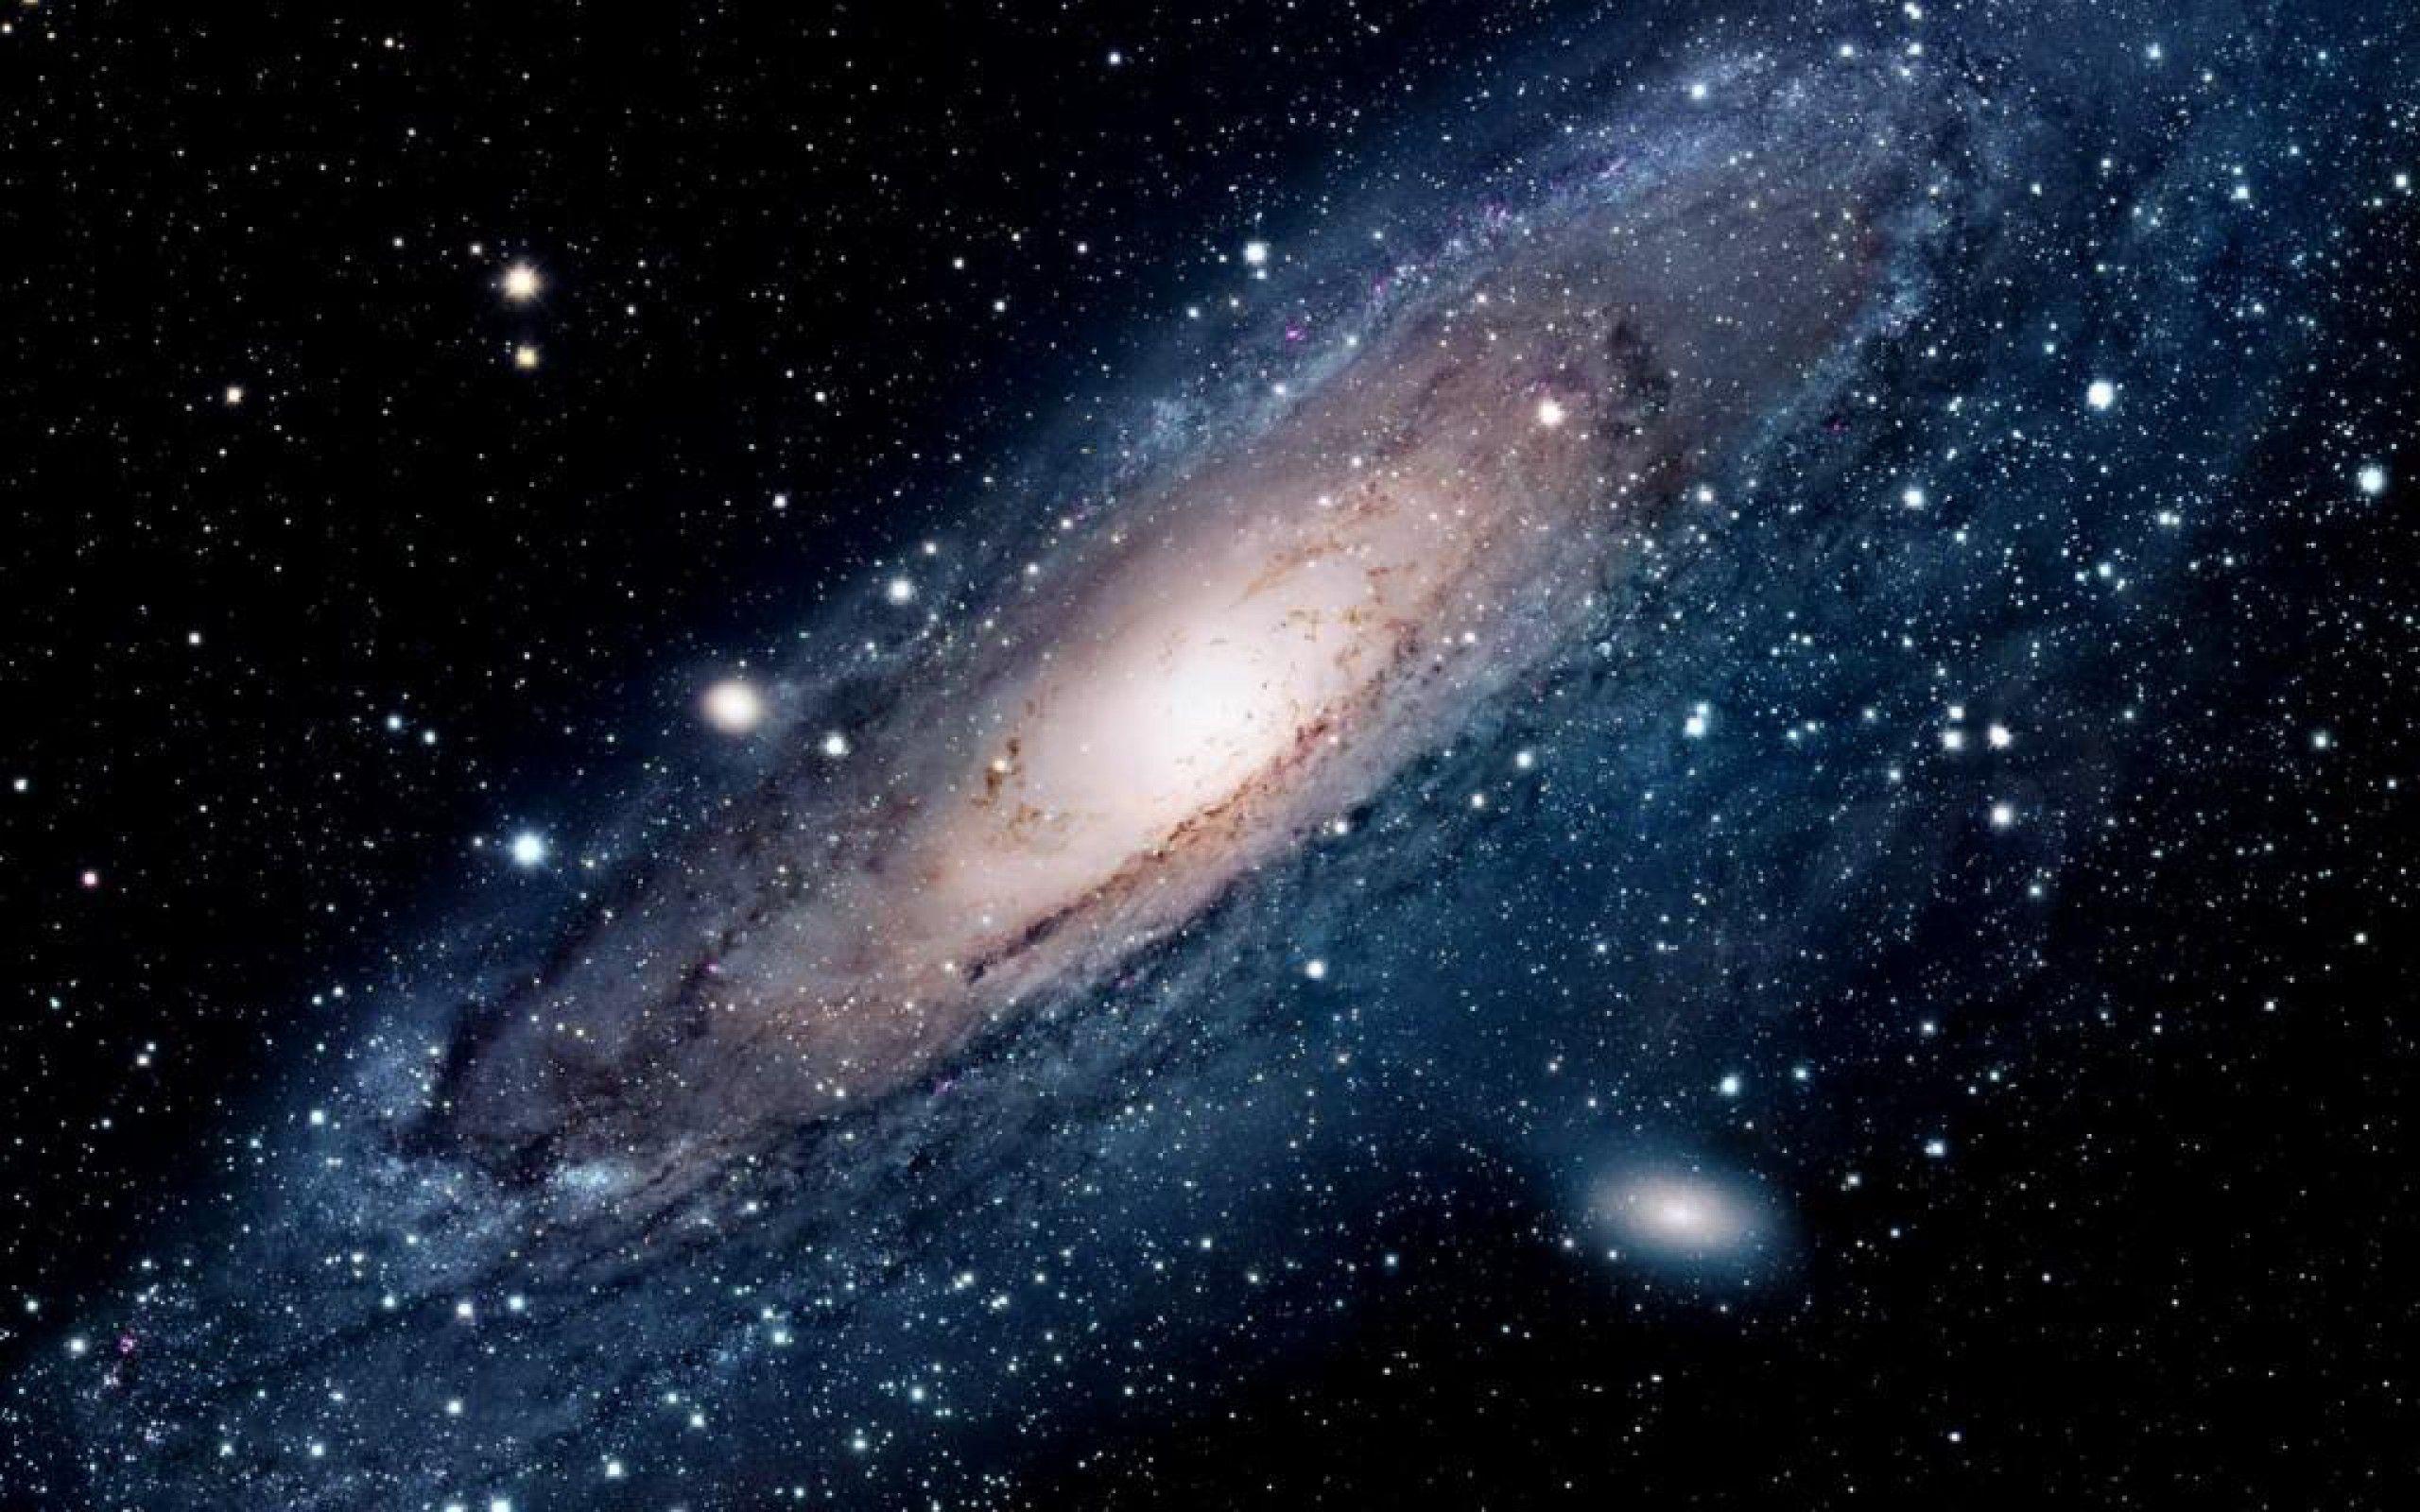 Andromeda Galaxy Wallpaper, 38 Andromeda Galaxy Image for Free